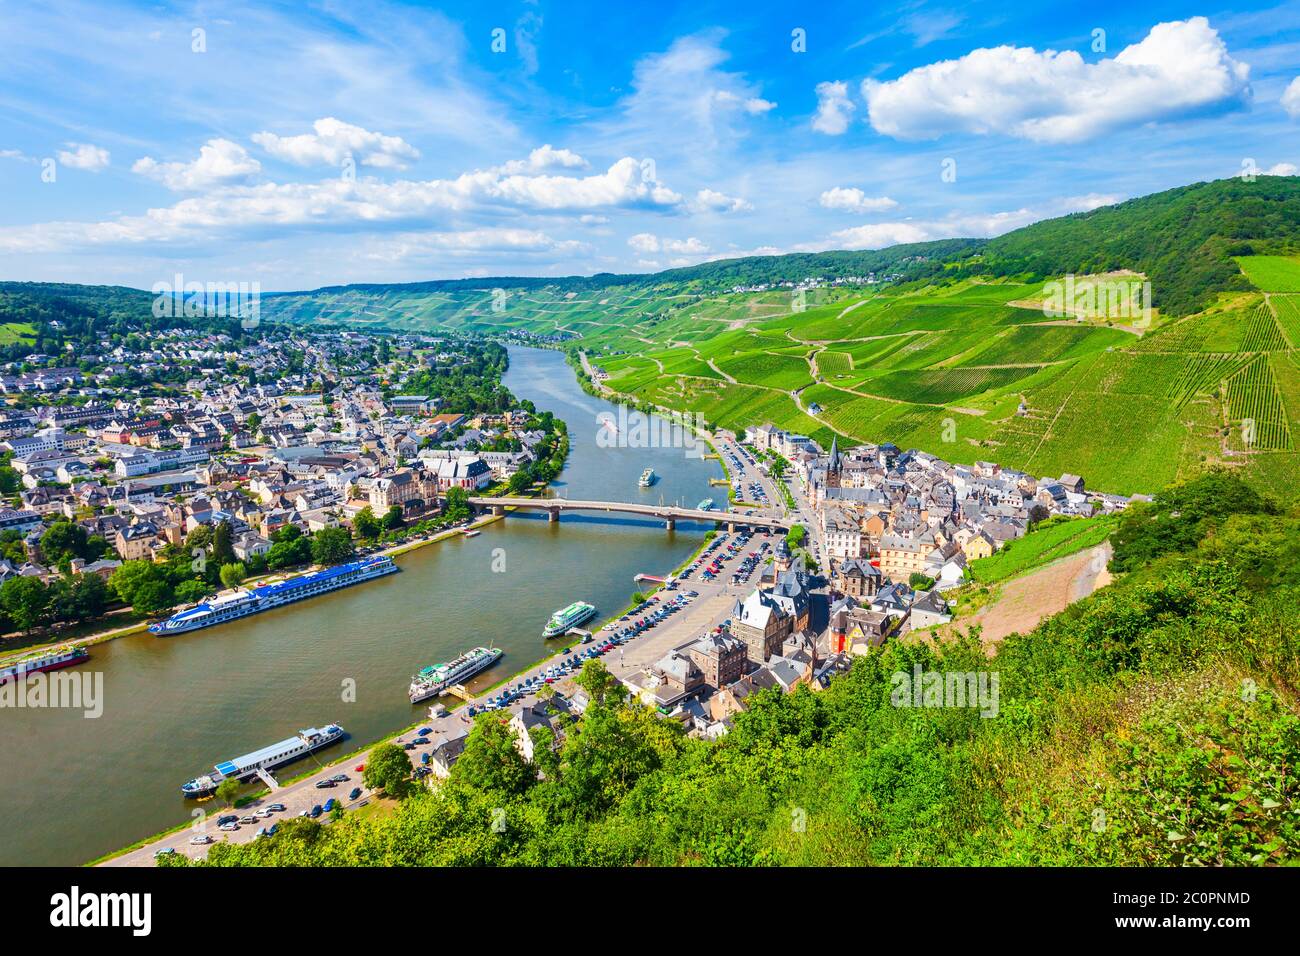 Bernkastel Kues aerial vue panoramique. Bernkastel-Kues est un célèbre centre viticole sur la Moselle, en Allemagne. Banque D'Images